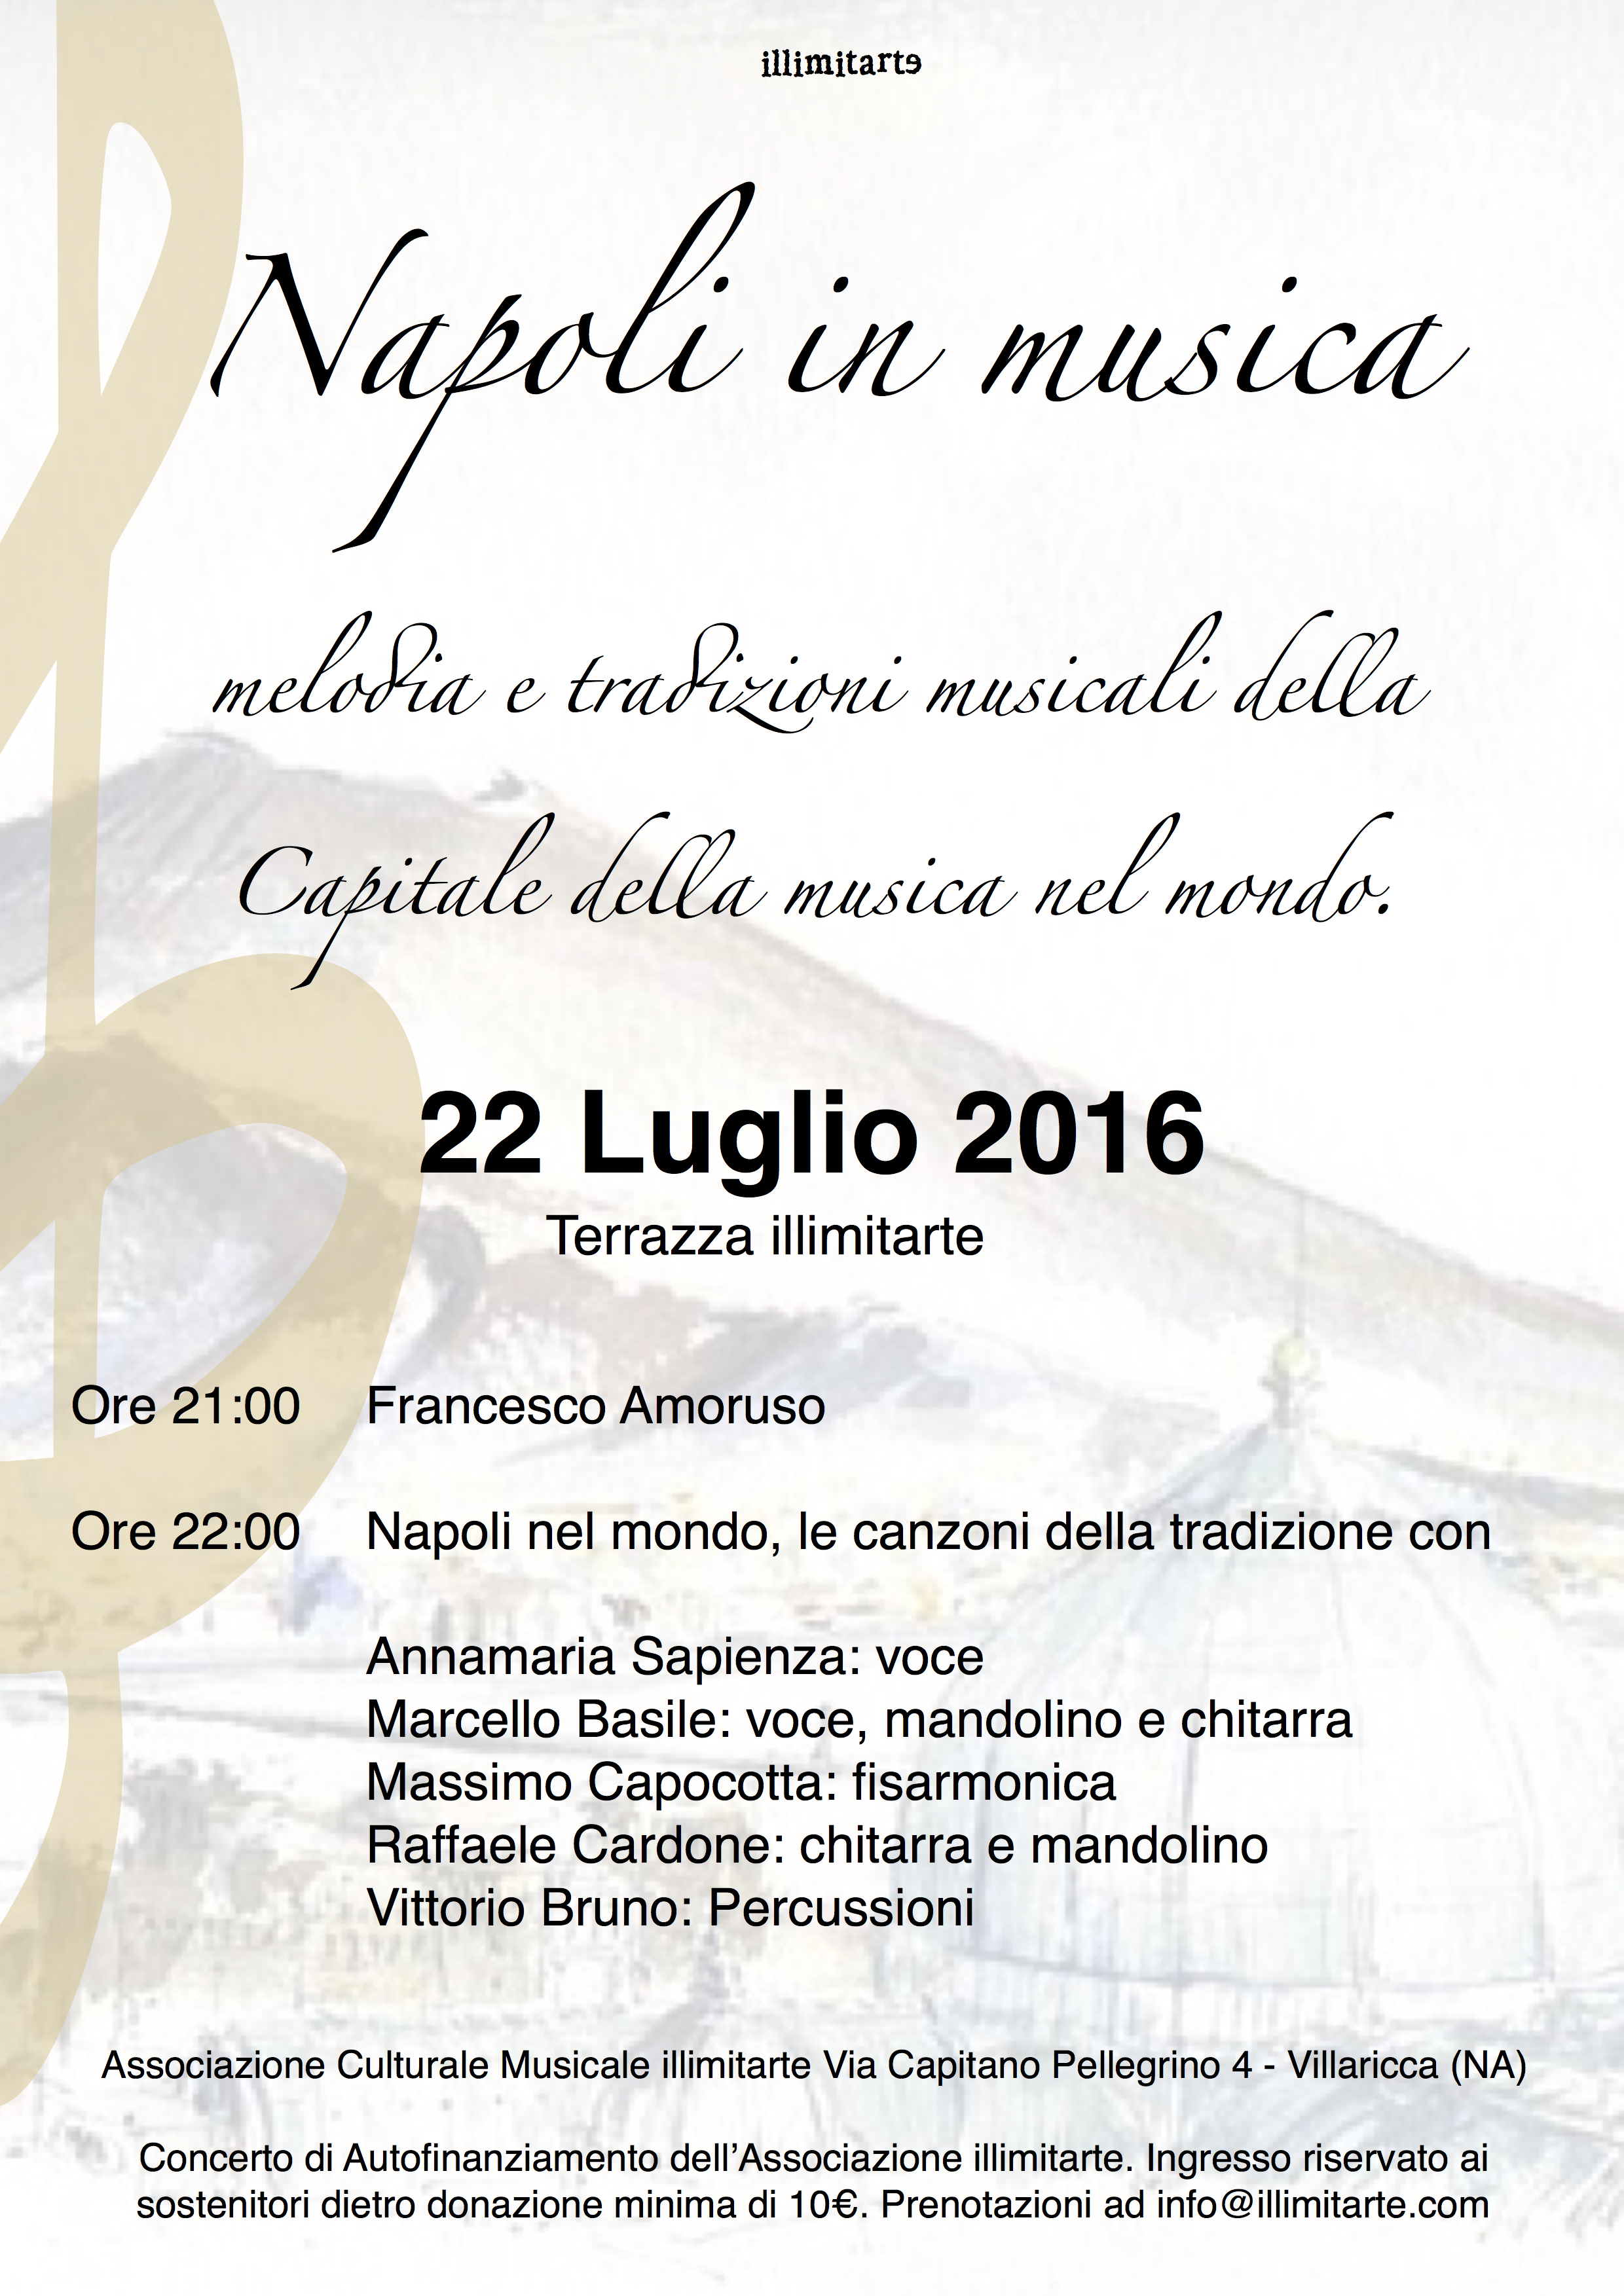 Napoli in musica: melodia e tradizioni musicali della Capitale della musica nel mondo.